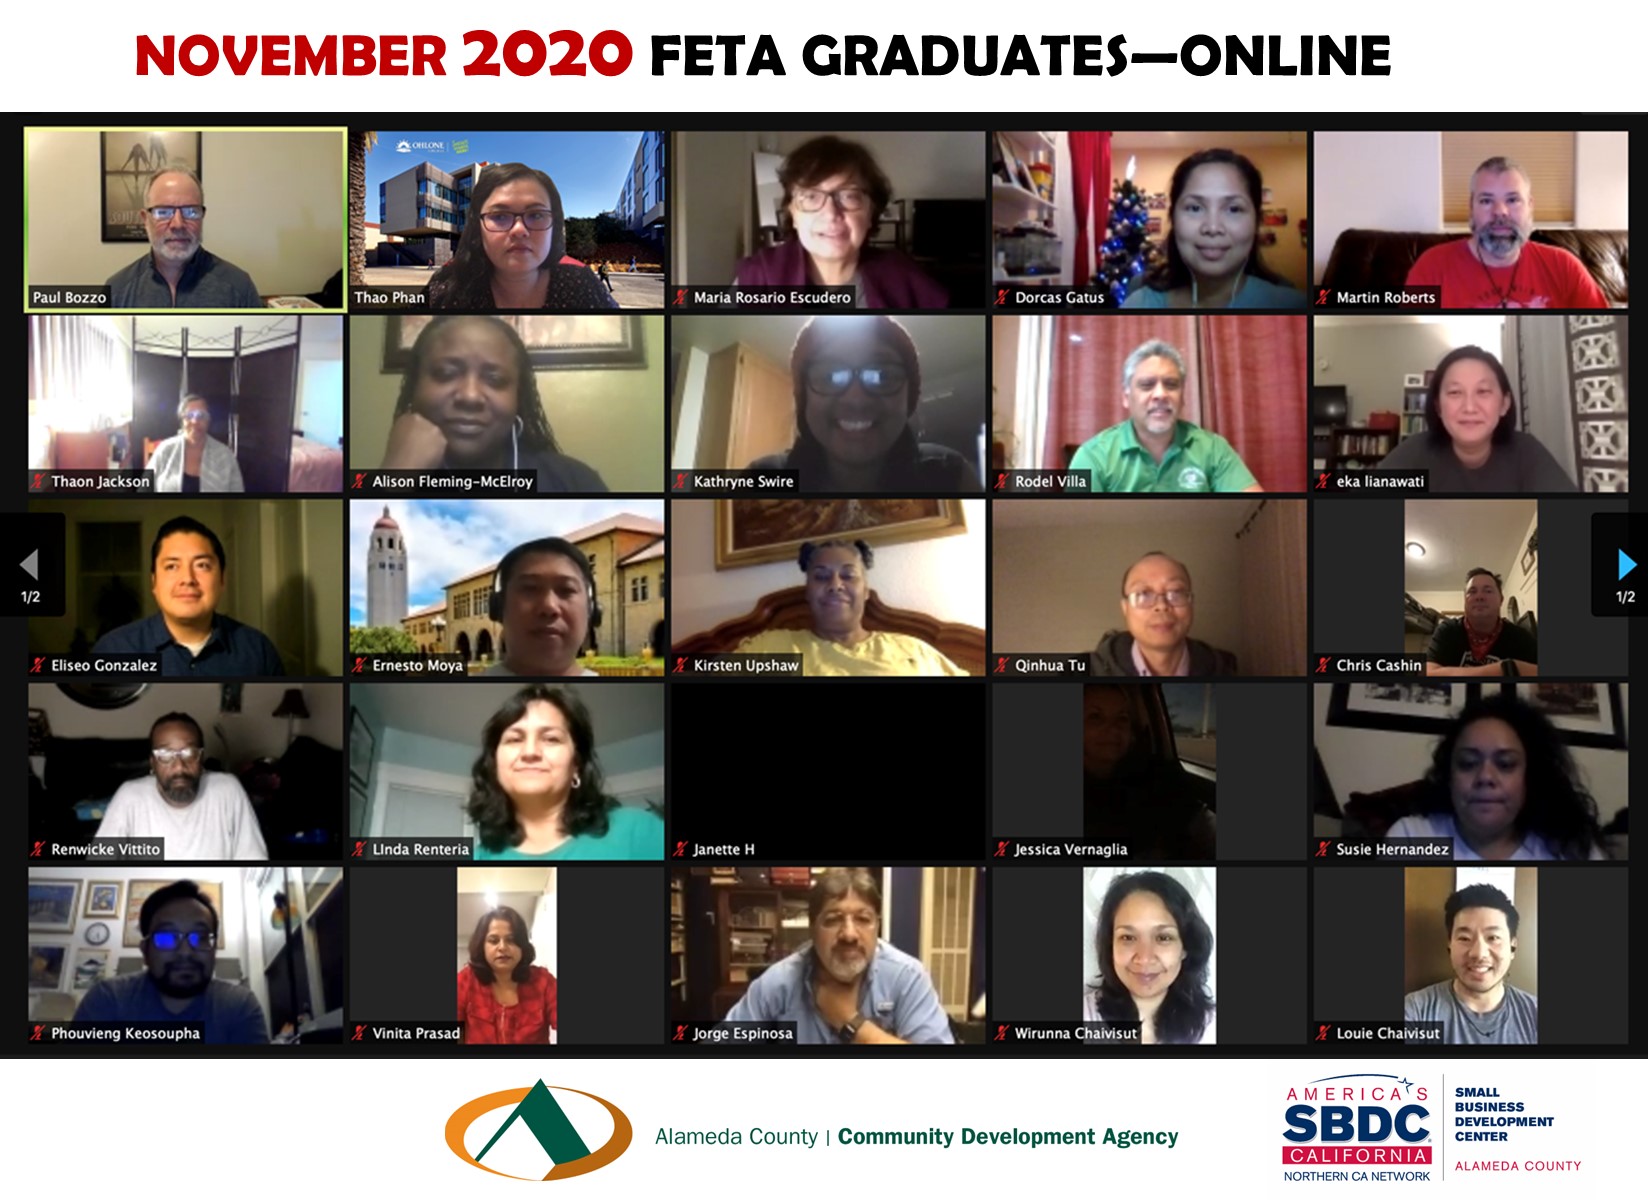 2020 FETA graduates